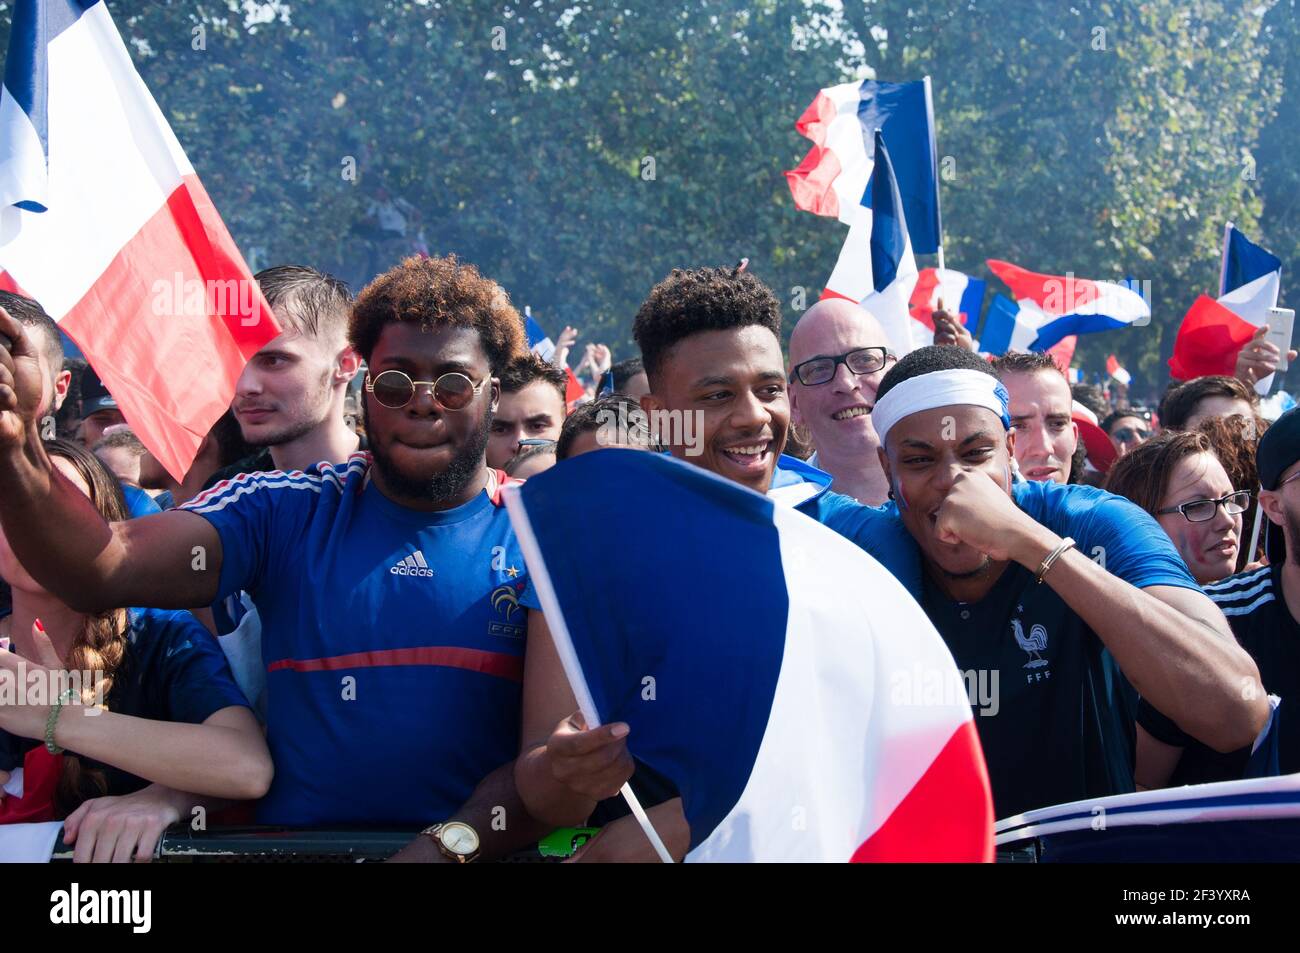 PARIS, FRANCE - 15 JUILLET 2018 : finale de la coupe du monde 2018 au champ de Mars, où des milliers de fans de l'équipe française ont regardé le match. Banque D'Images